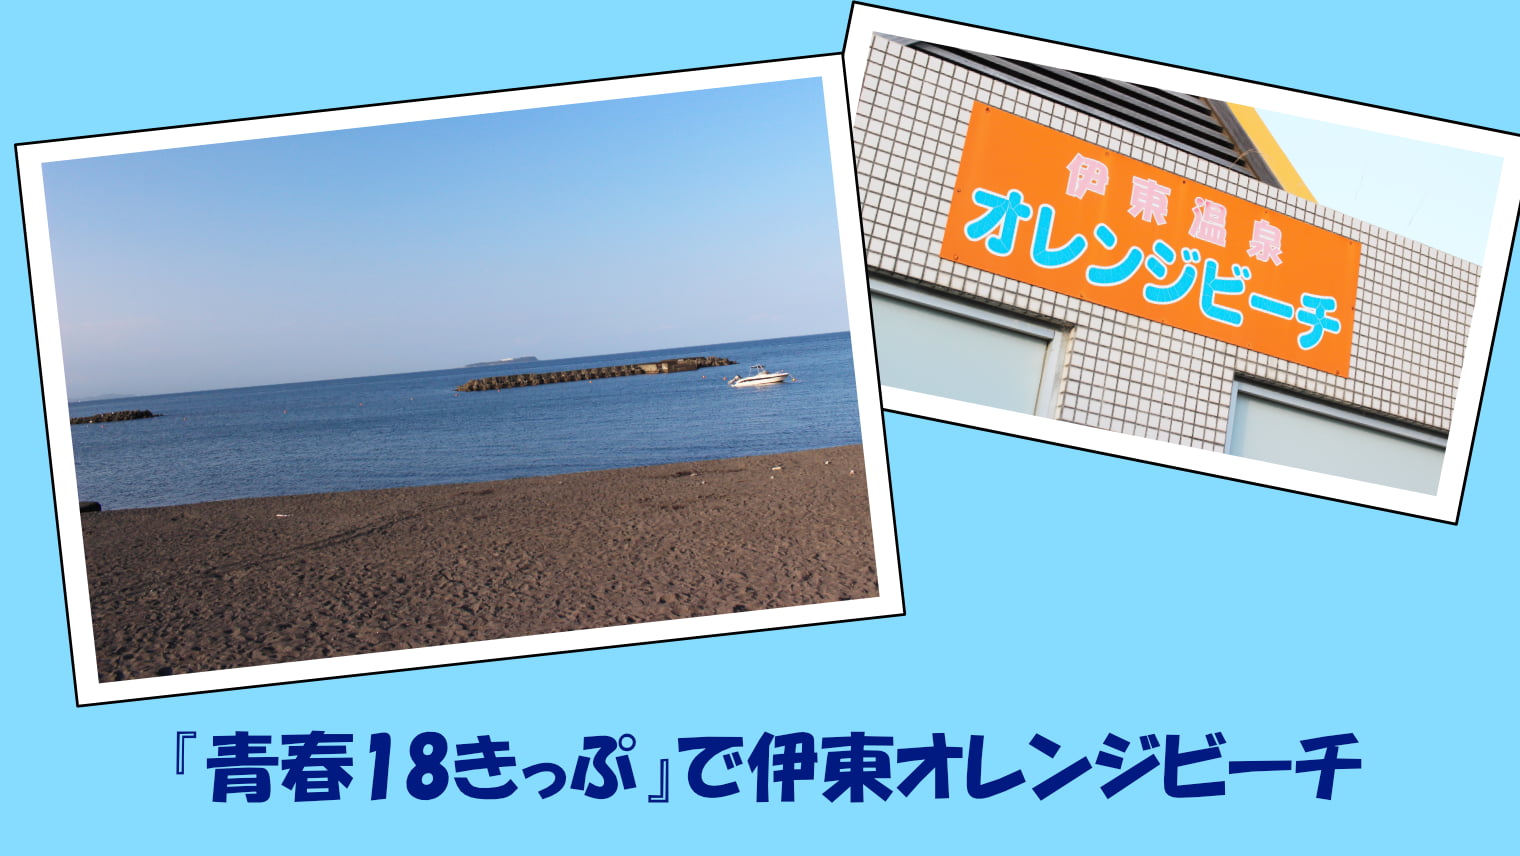 『青春18きっぷ』で夏の伊東オレンジビーチをお得に楽しむ